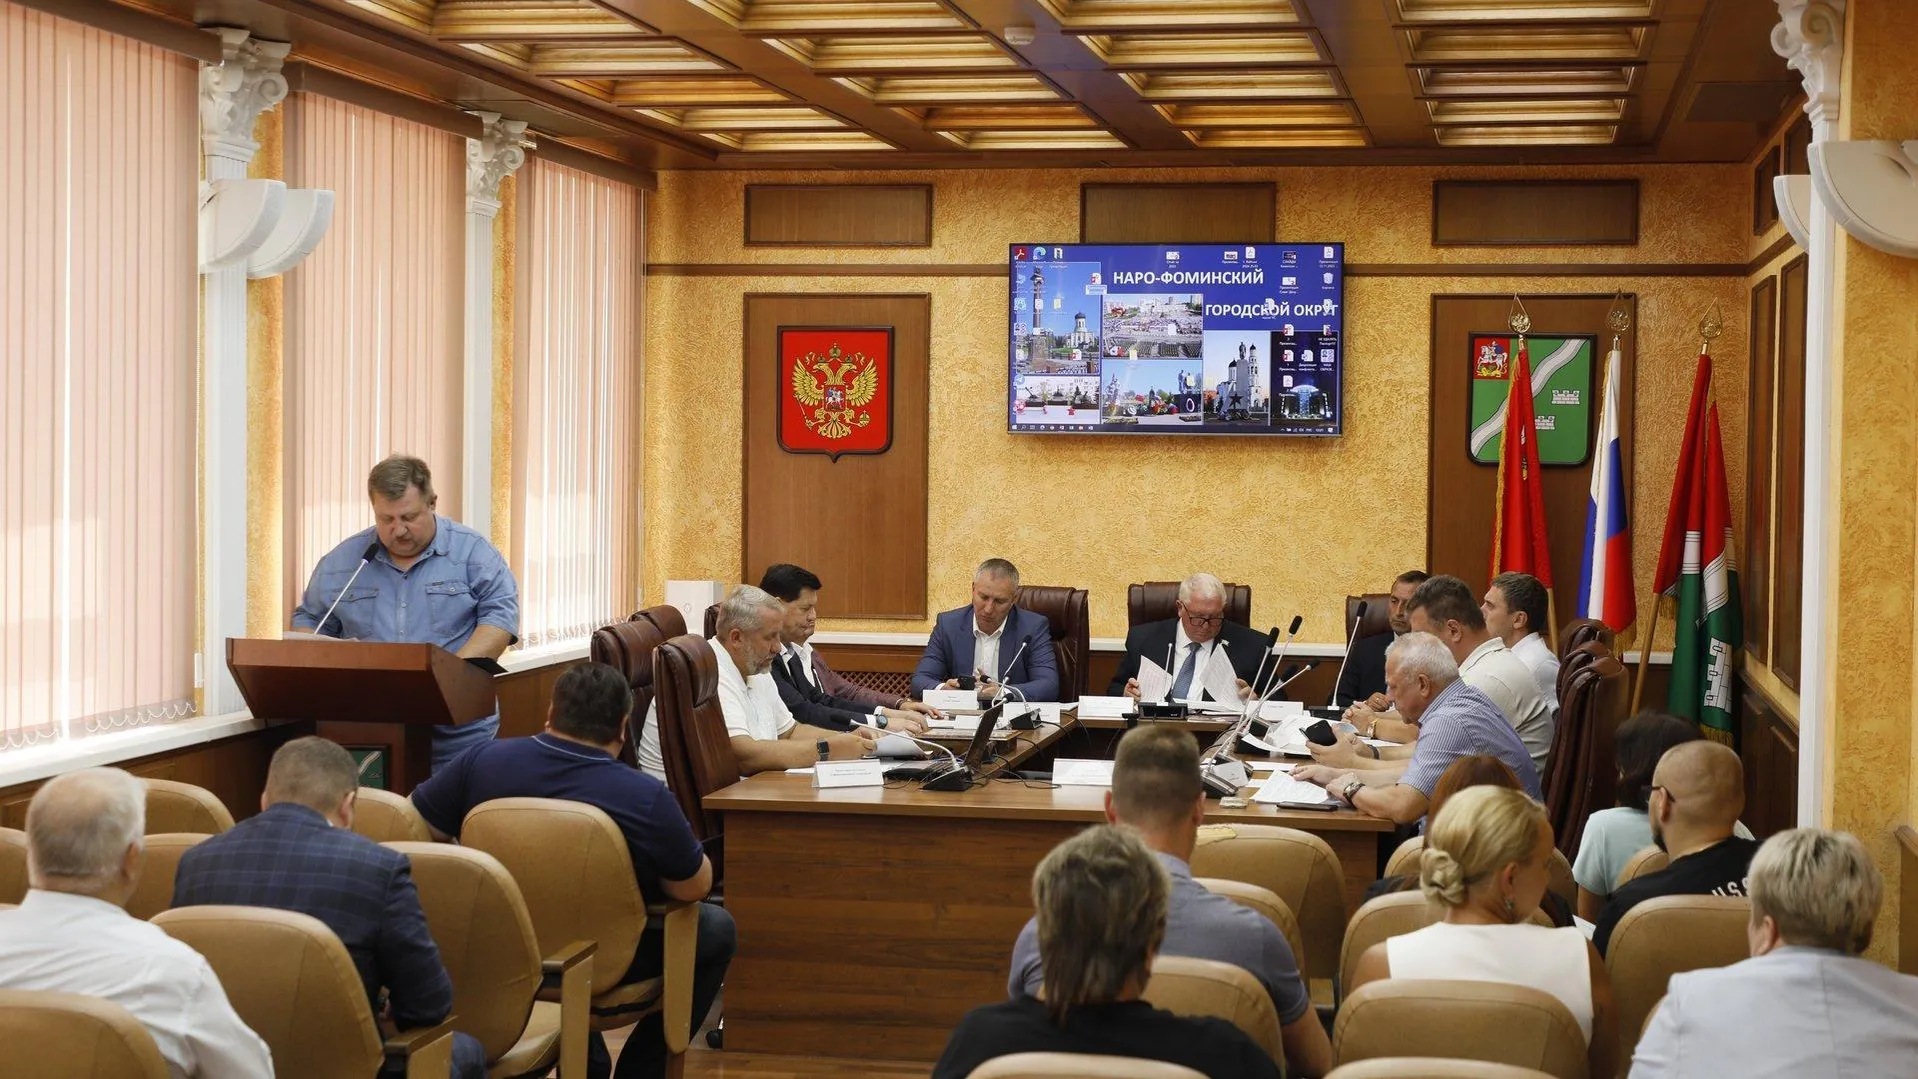 Состоялось заседание Совета депутатов Наро-Фоминского городского округа